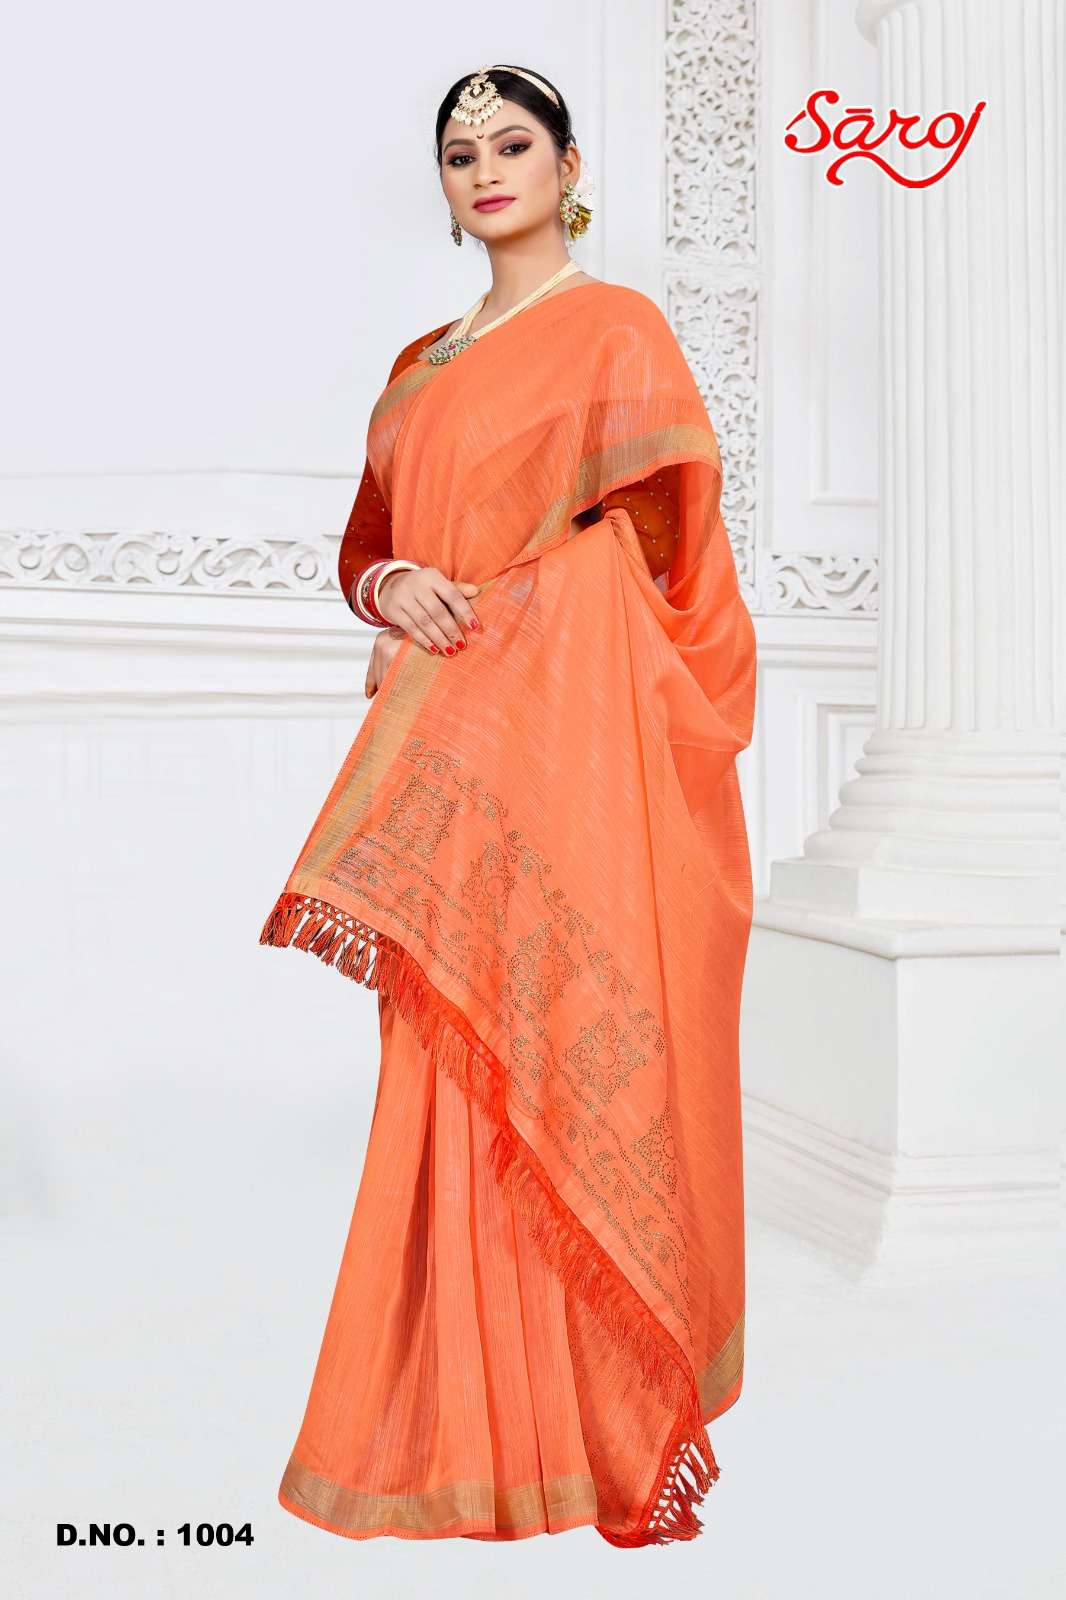 Saroj textile presents Mahotsav vol-1 cotton sarees catalogue